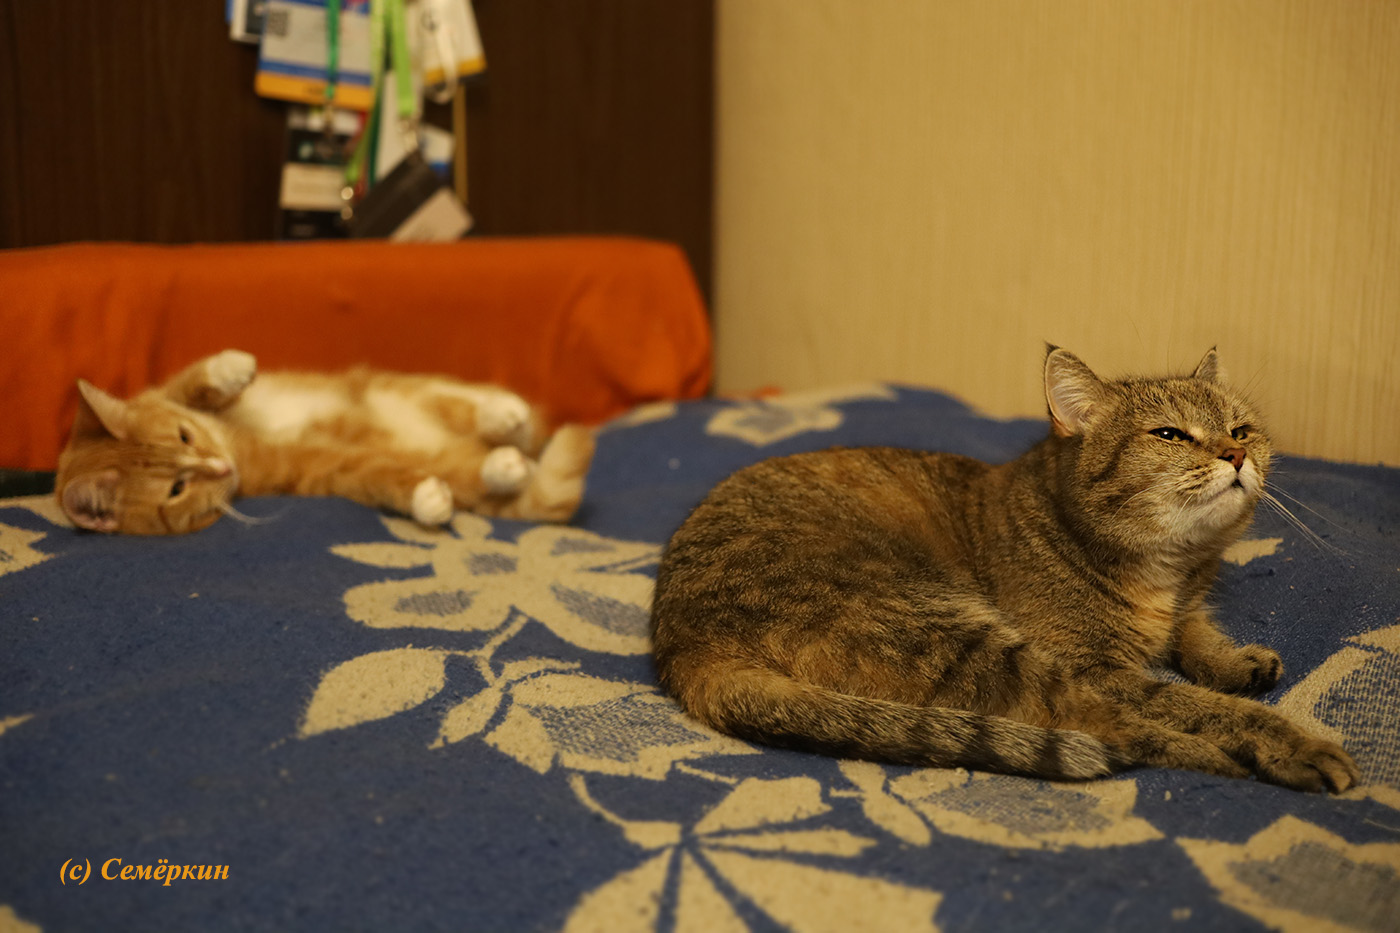 Тёплые коты - кошки Алиска и Рыська - Весной пахнет!